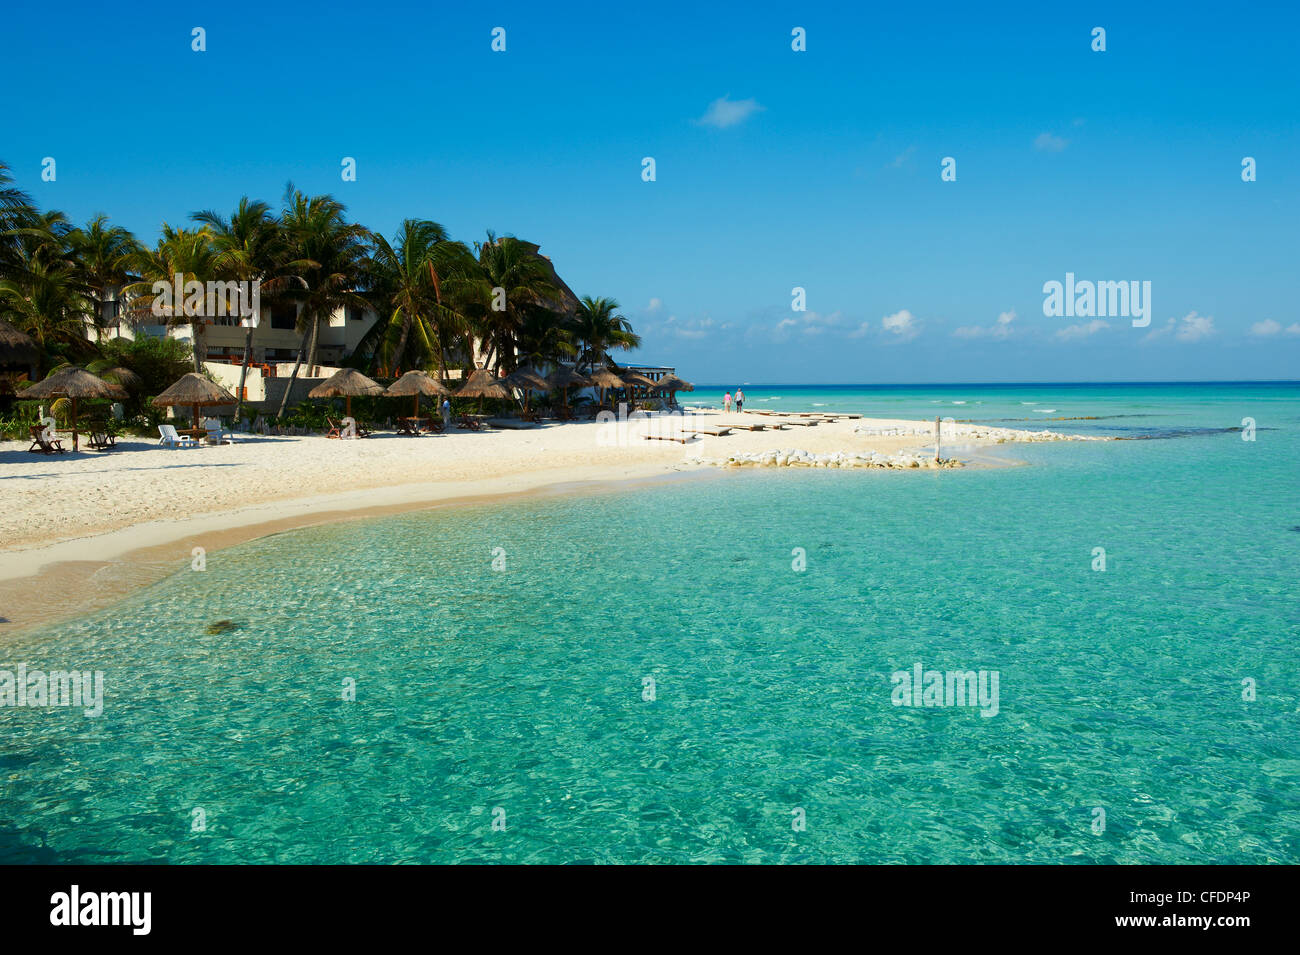 Playa Norte beach, Isla Mujeres Island, Riviera Maya, Quintana Roo, Mexico, Stock Photo